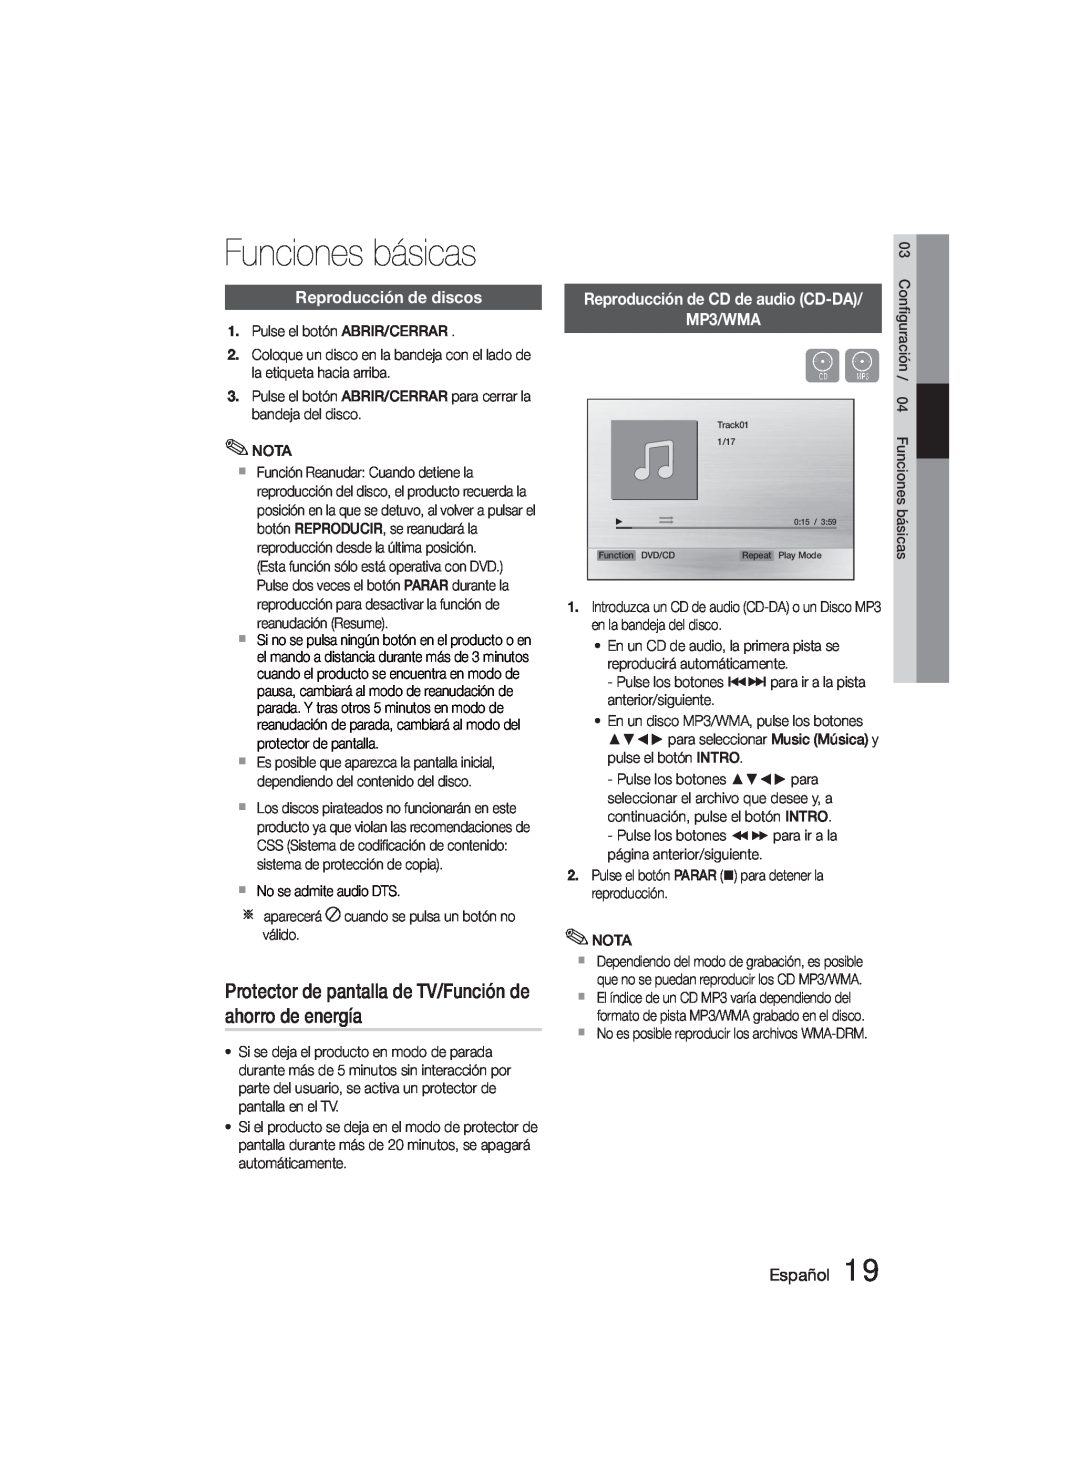 Samsung MM-D330D/ZF Funciones básicas, Protector de pantalla de TV/Función de ahorro de energía, Reproducción de discos 